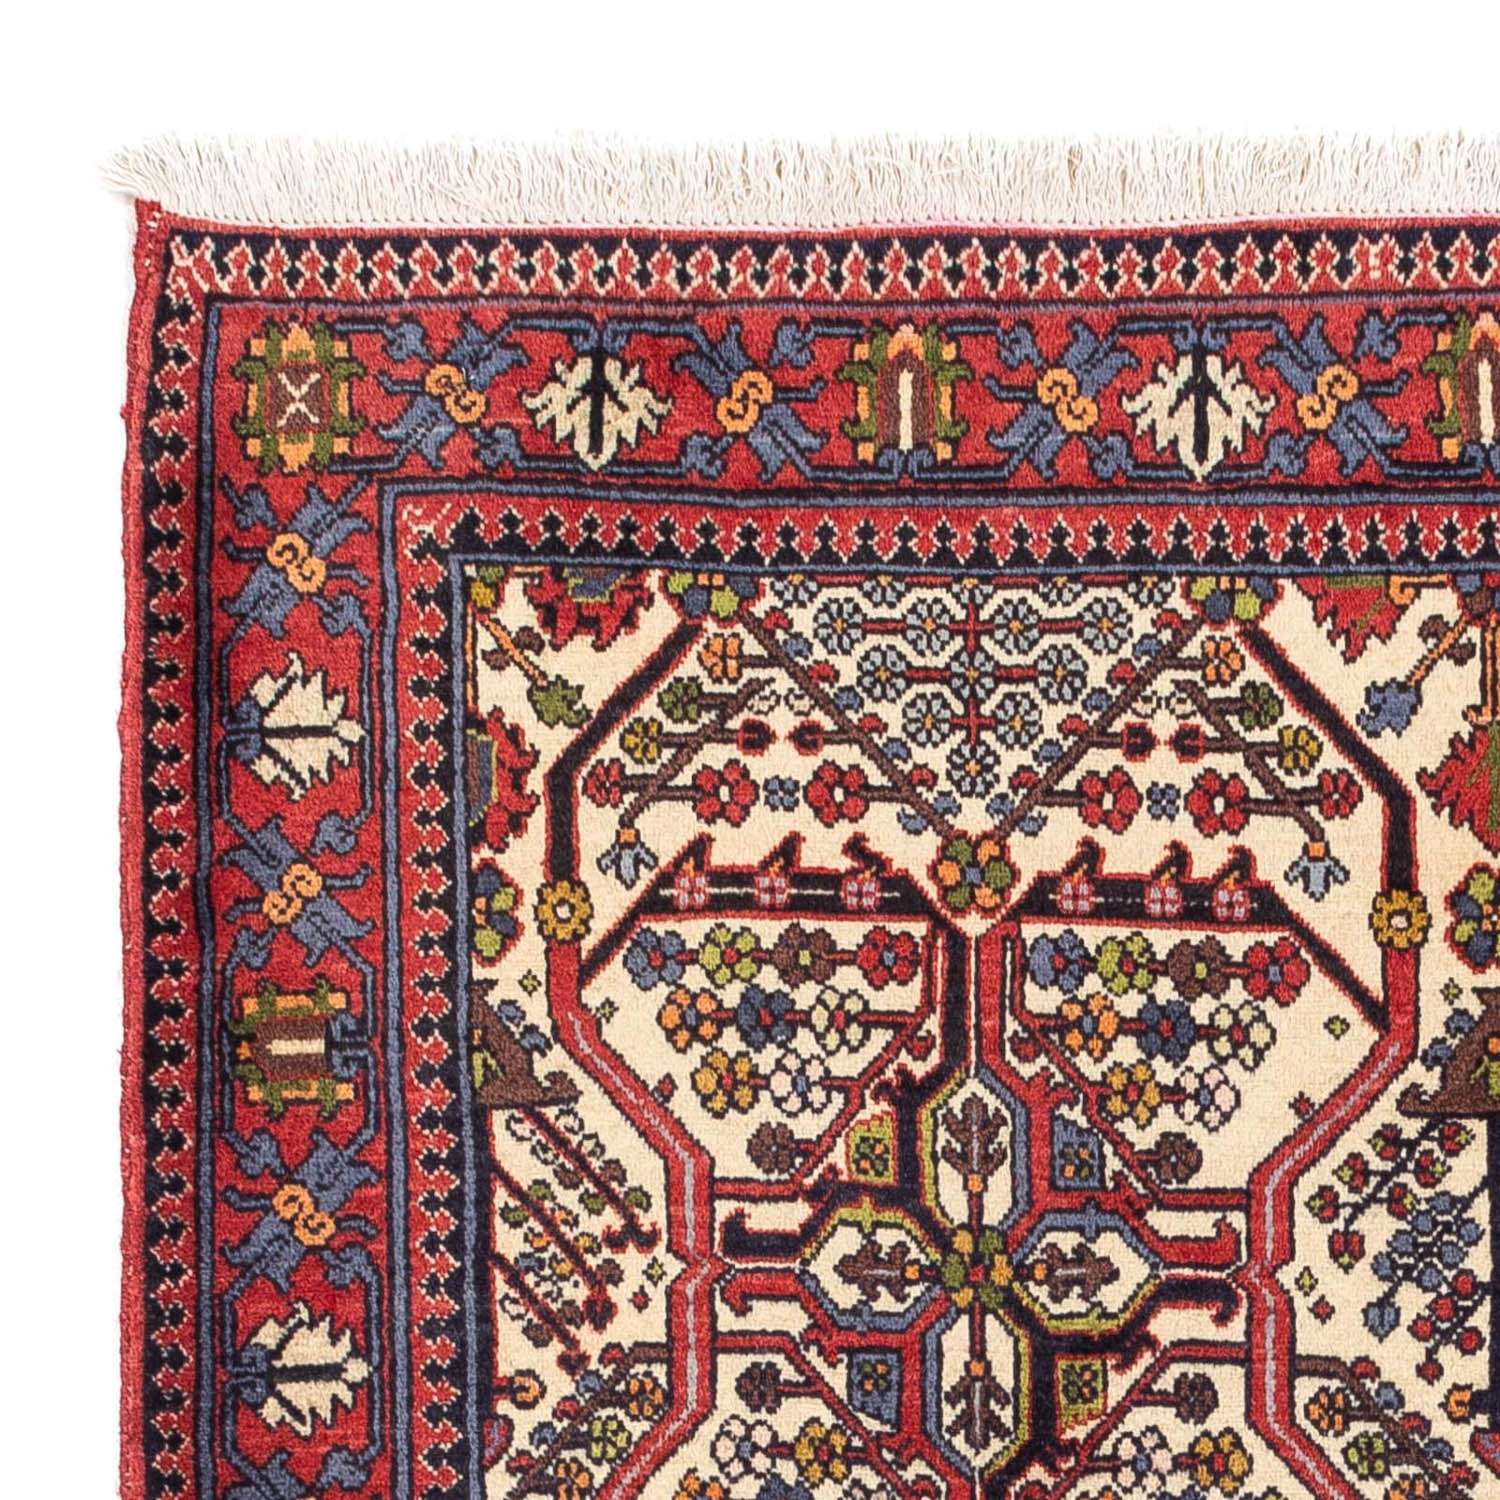 Perski dywan - Nomadyczny - 160 x 110 cm - beżowy